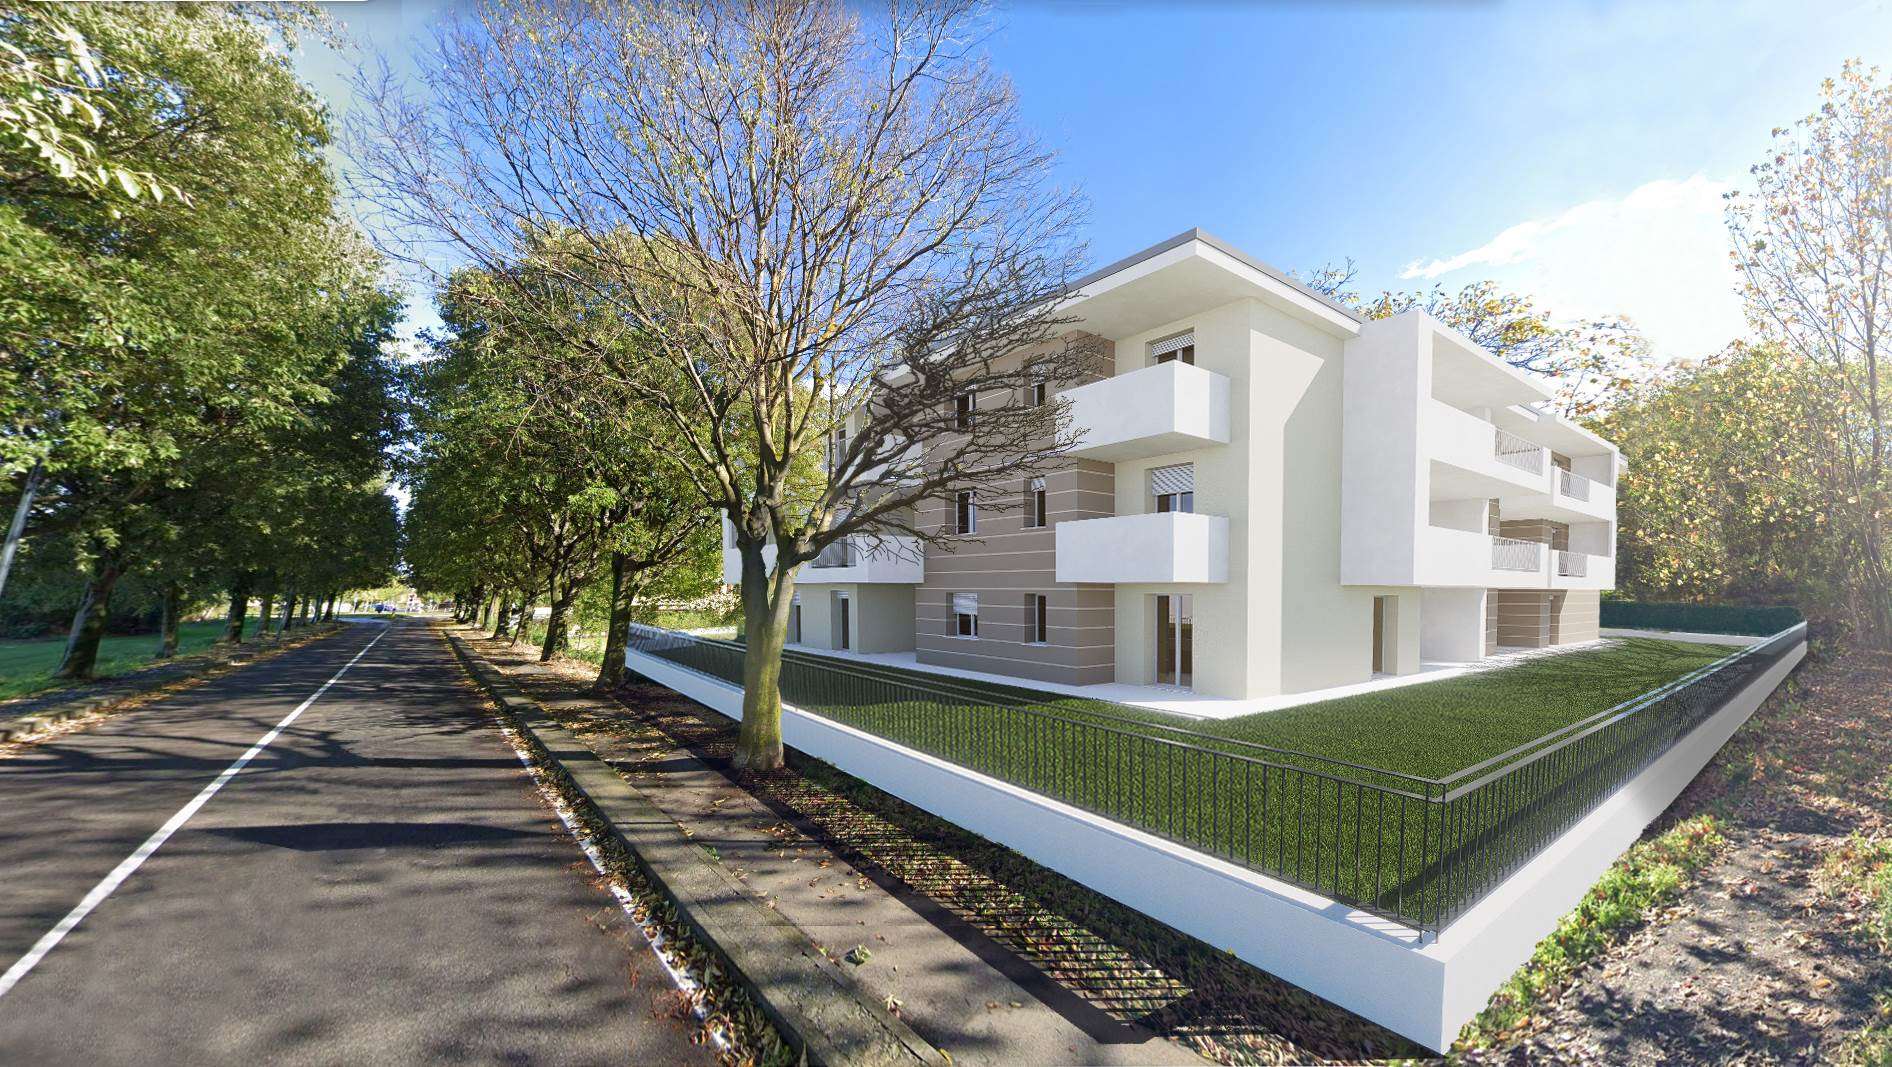 NUOVA COSTRUZIONE VIA PAOLO VI PALAZZINA SUD Vendesi appartamenti inseriti in contesto urbano residenziale, circondato dal verde agricolo con vincoli 